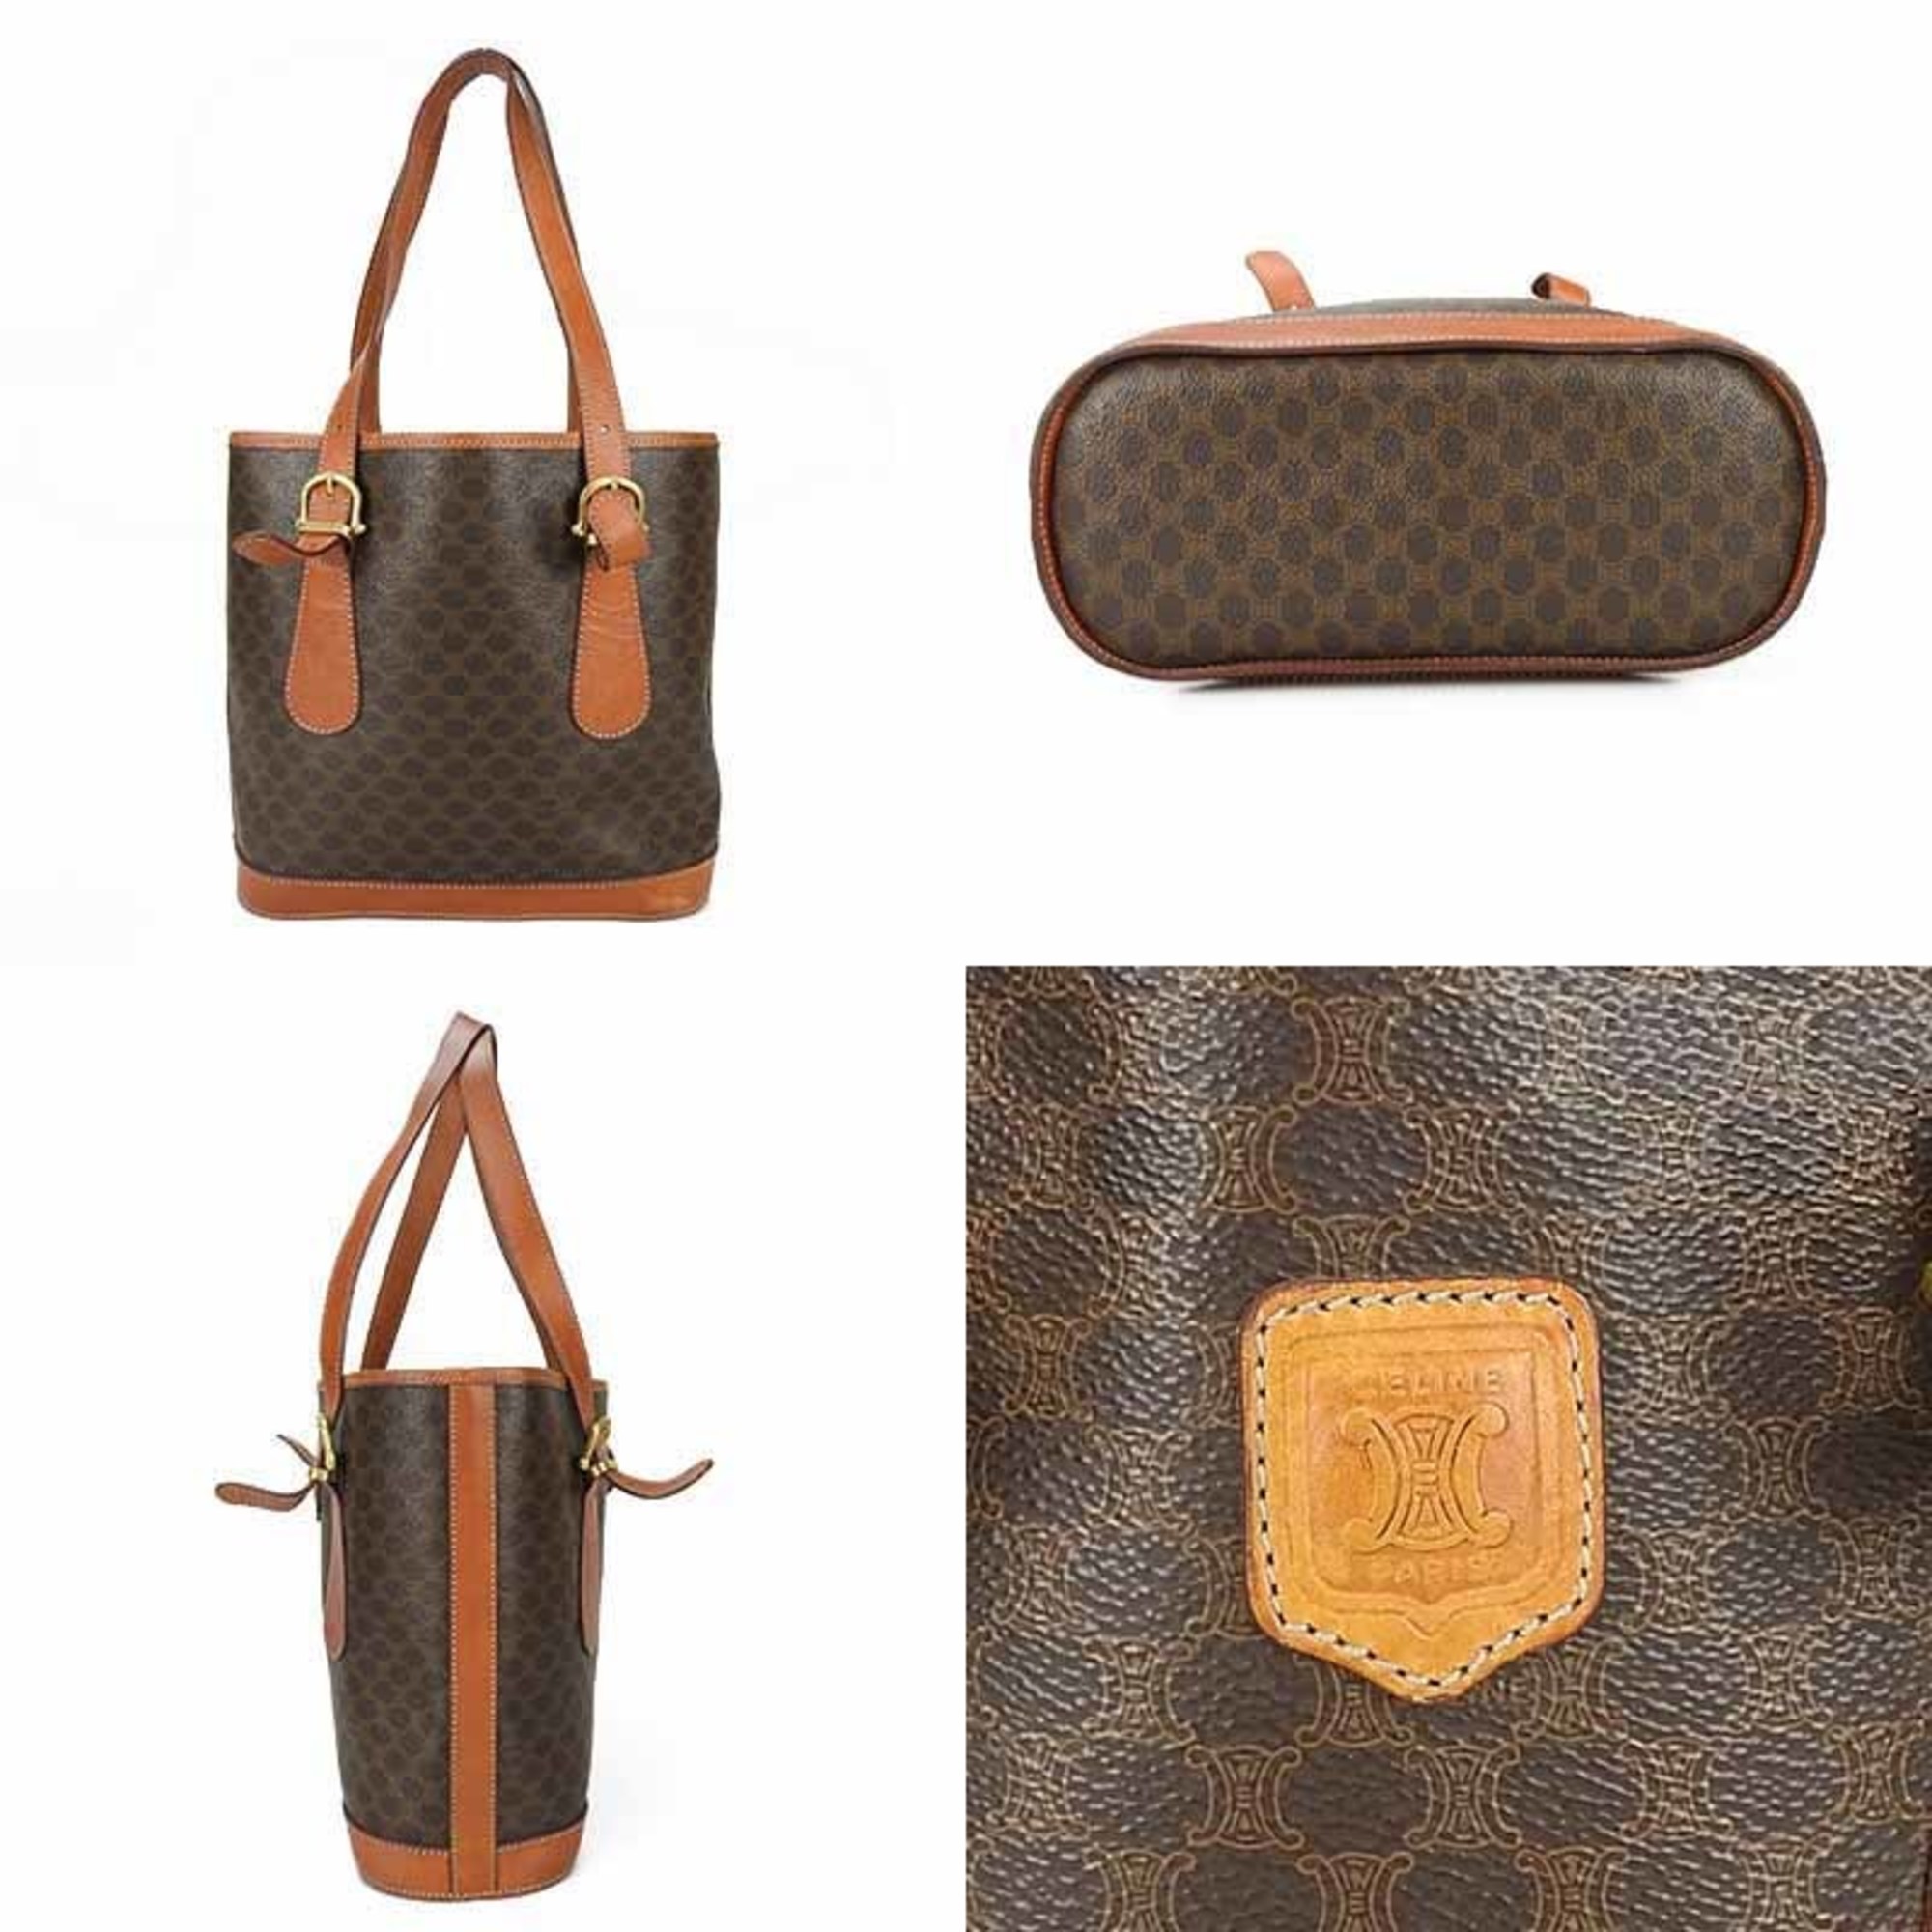 CELINE Macadam pattern tote bag shoulder leather PVC brown bucket type ladies totebag vintage buyers